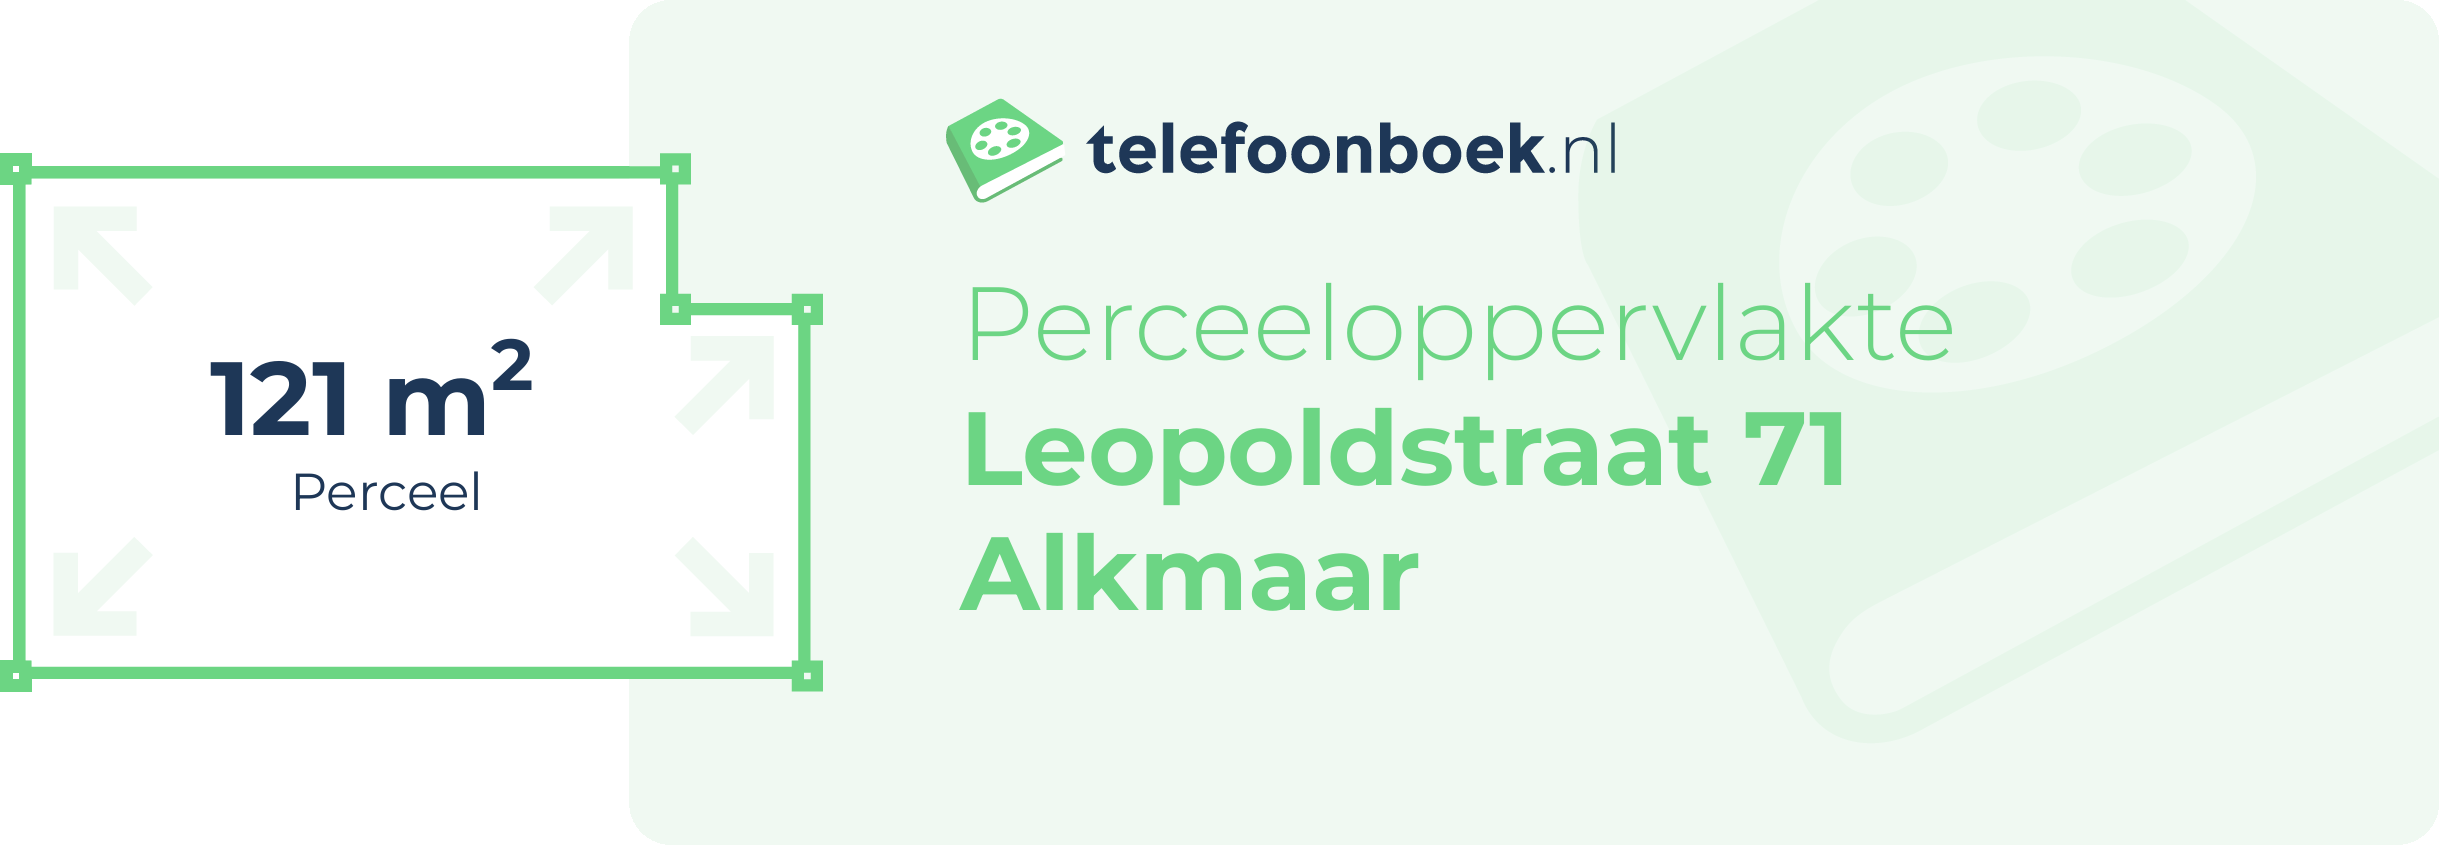 Perceeloppervlakte Leopoldstraat 71 Alkmaar